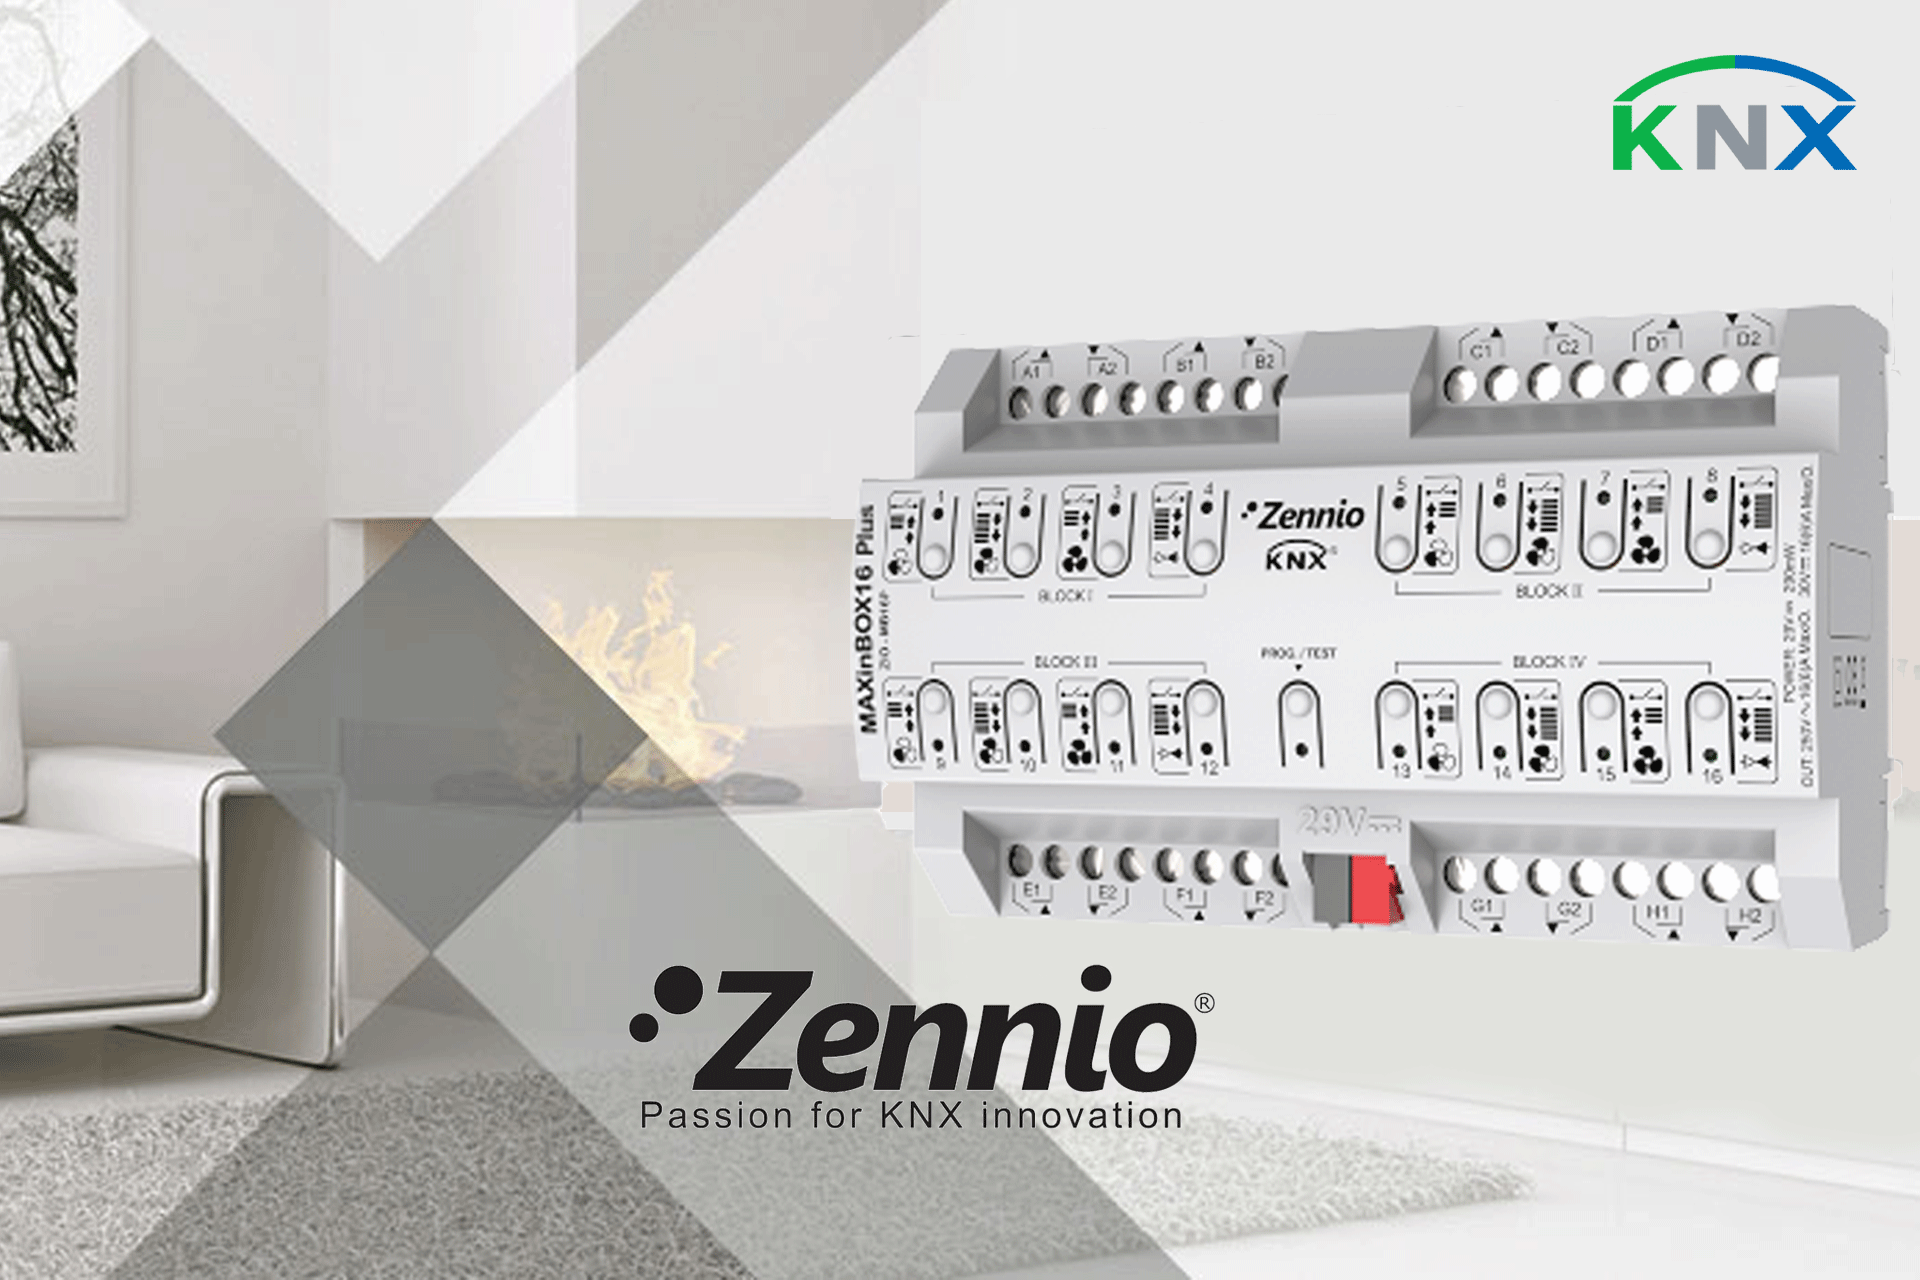 عملگر ساختمان هوشمند – ساخت Zennio اسپانیا